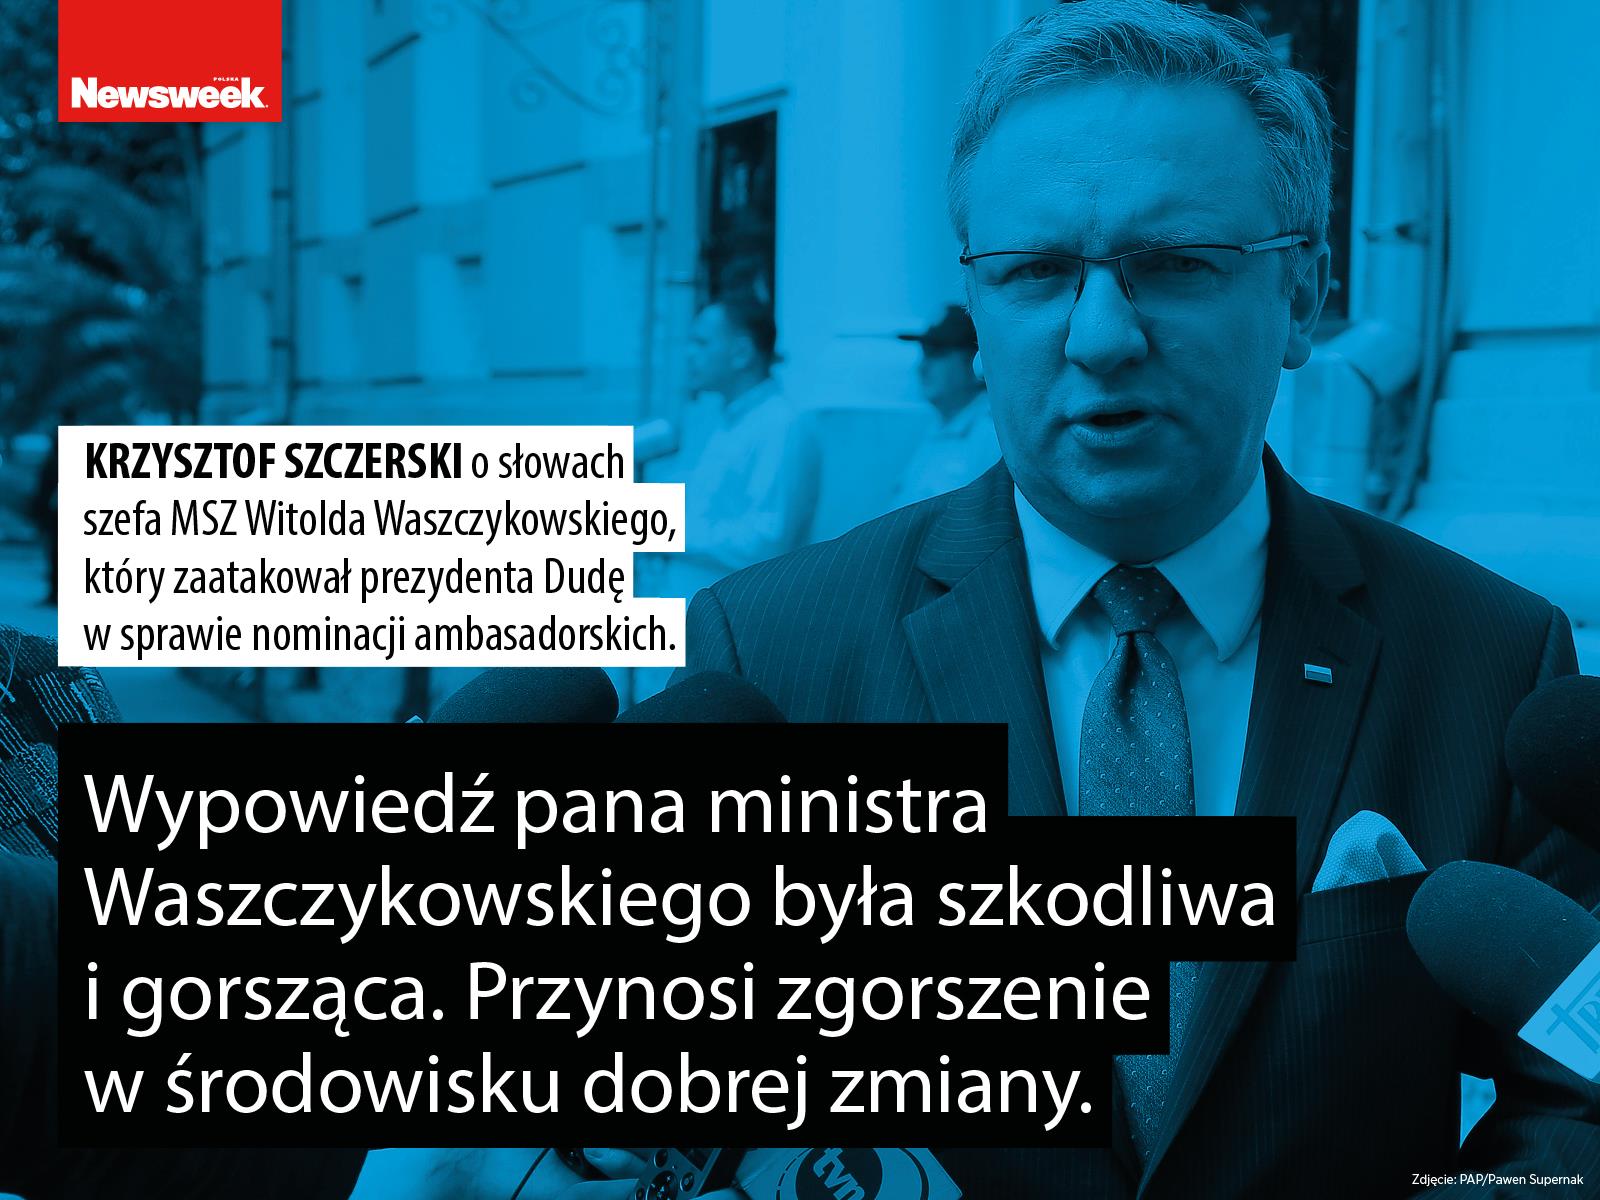 Krzysztof Szczerski polityka Prawo i Sprawiedliwość PiS